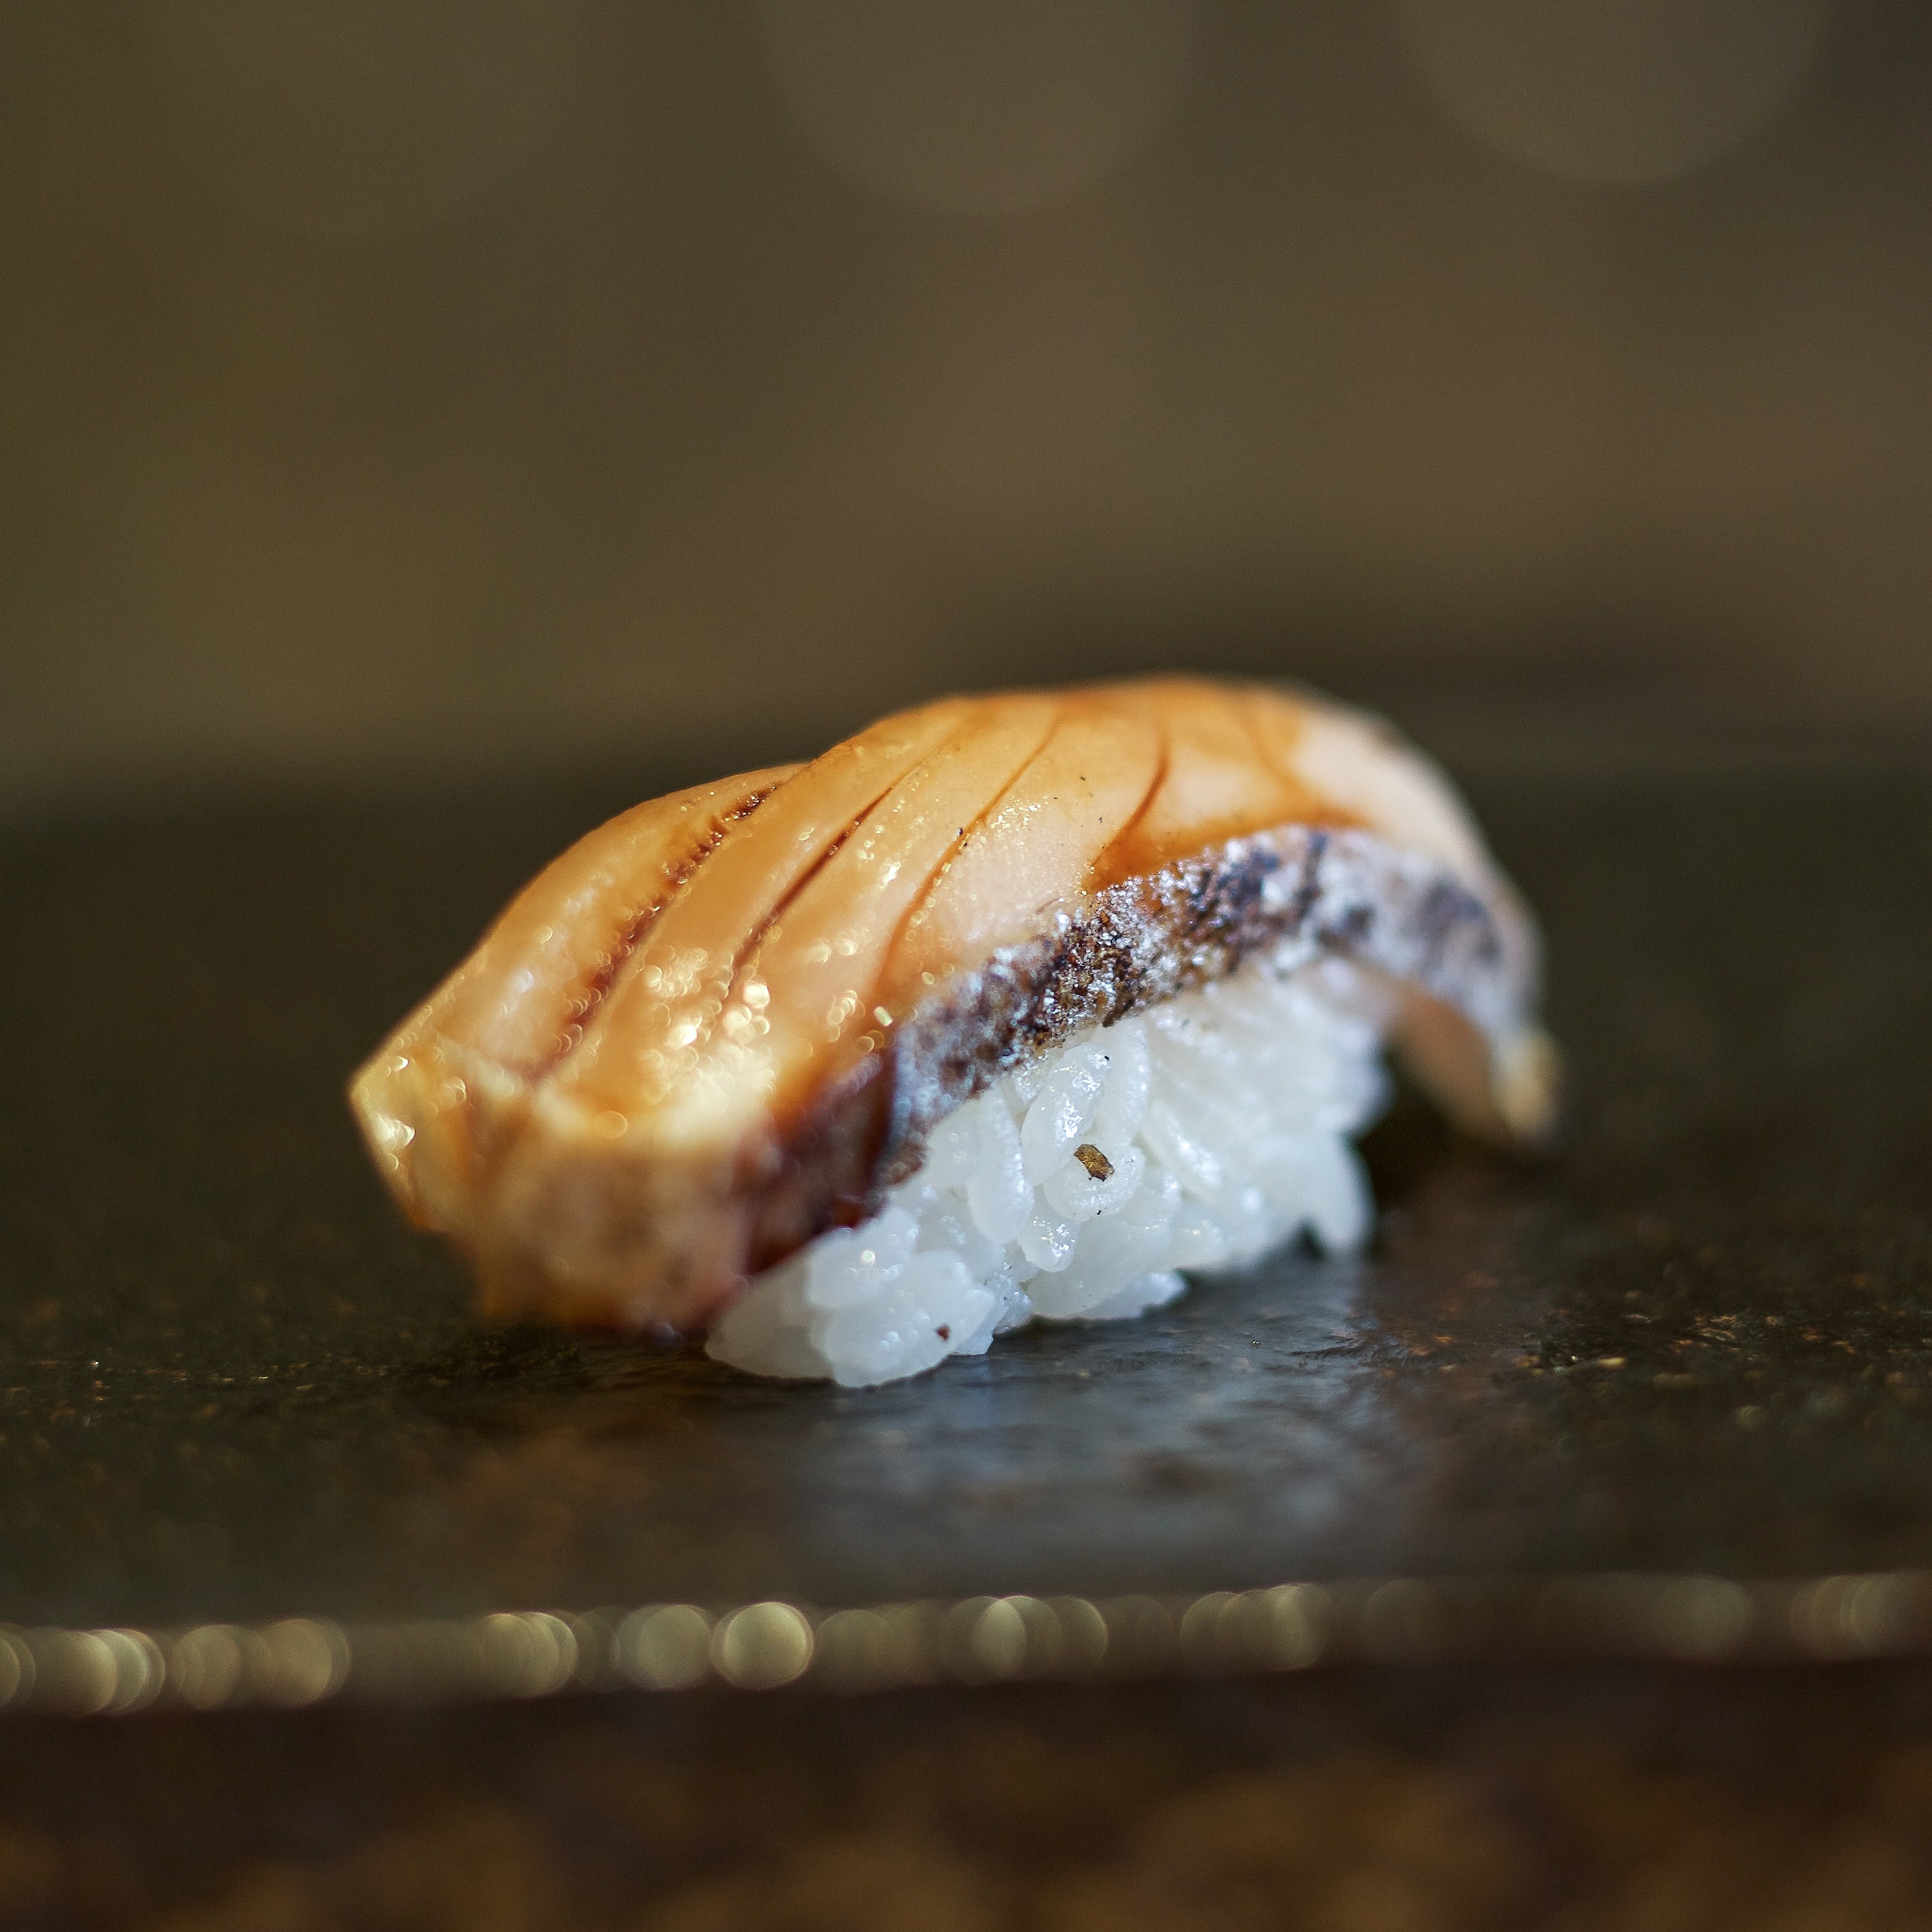 Sawara 鰆 Spanish Mackerel The Sushi Geek